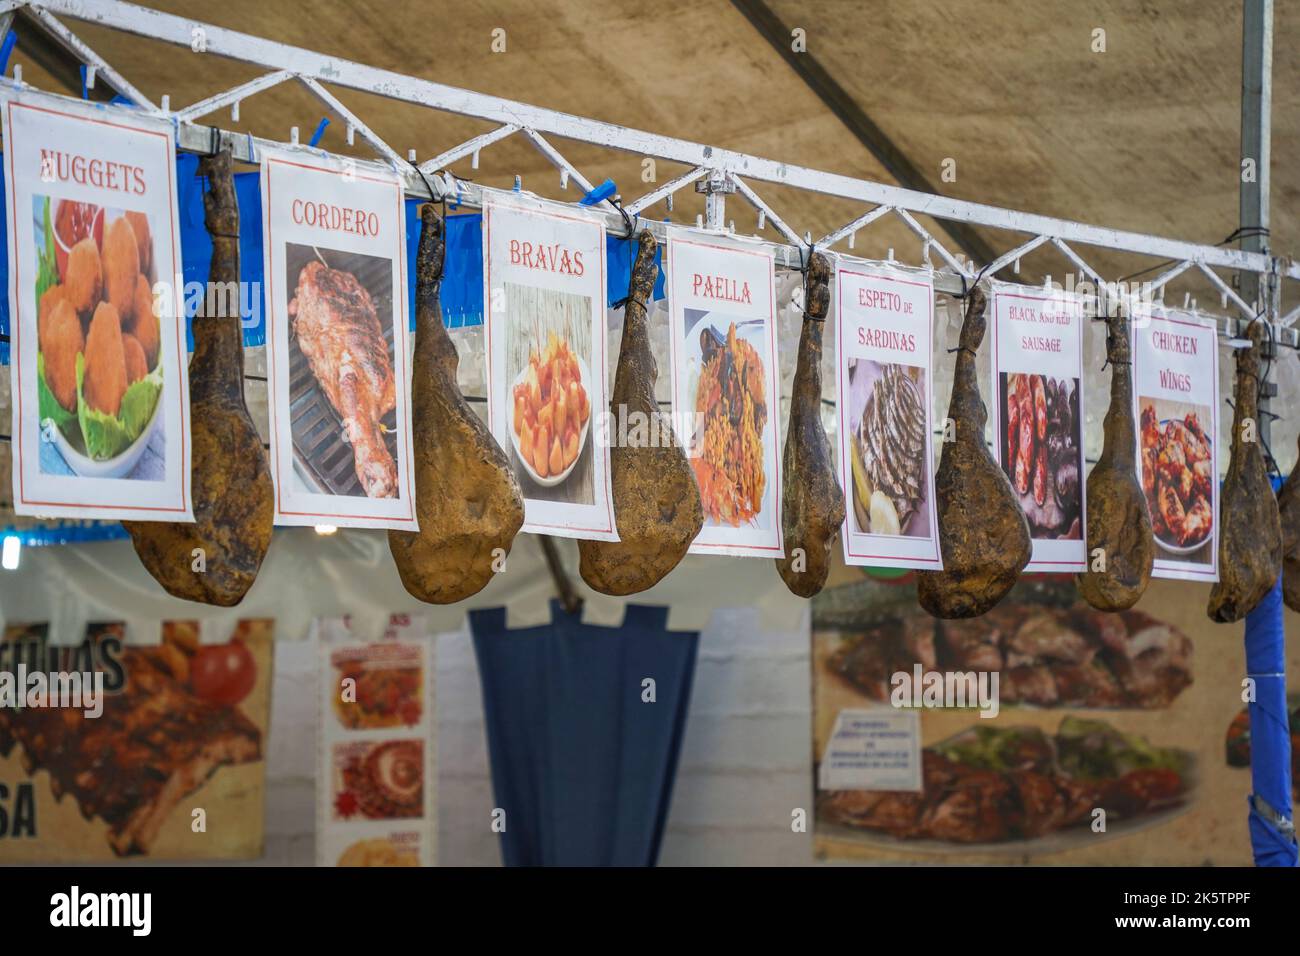 Cibo stand carne, segno in occasione della celebrazione annuale della Feria festosa a Fuengirola, Costa del Sol, Spagna. Foto Stock